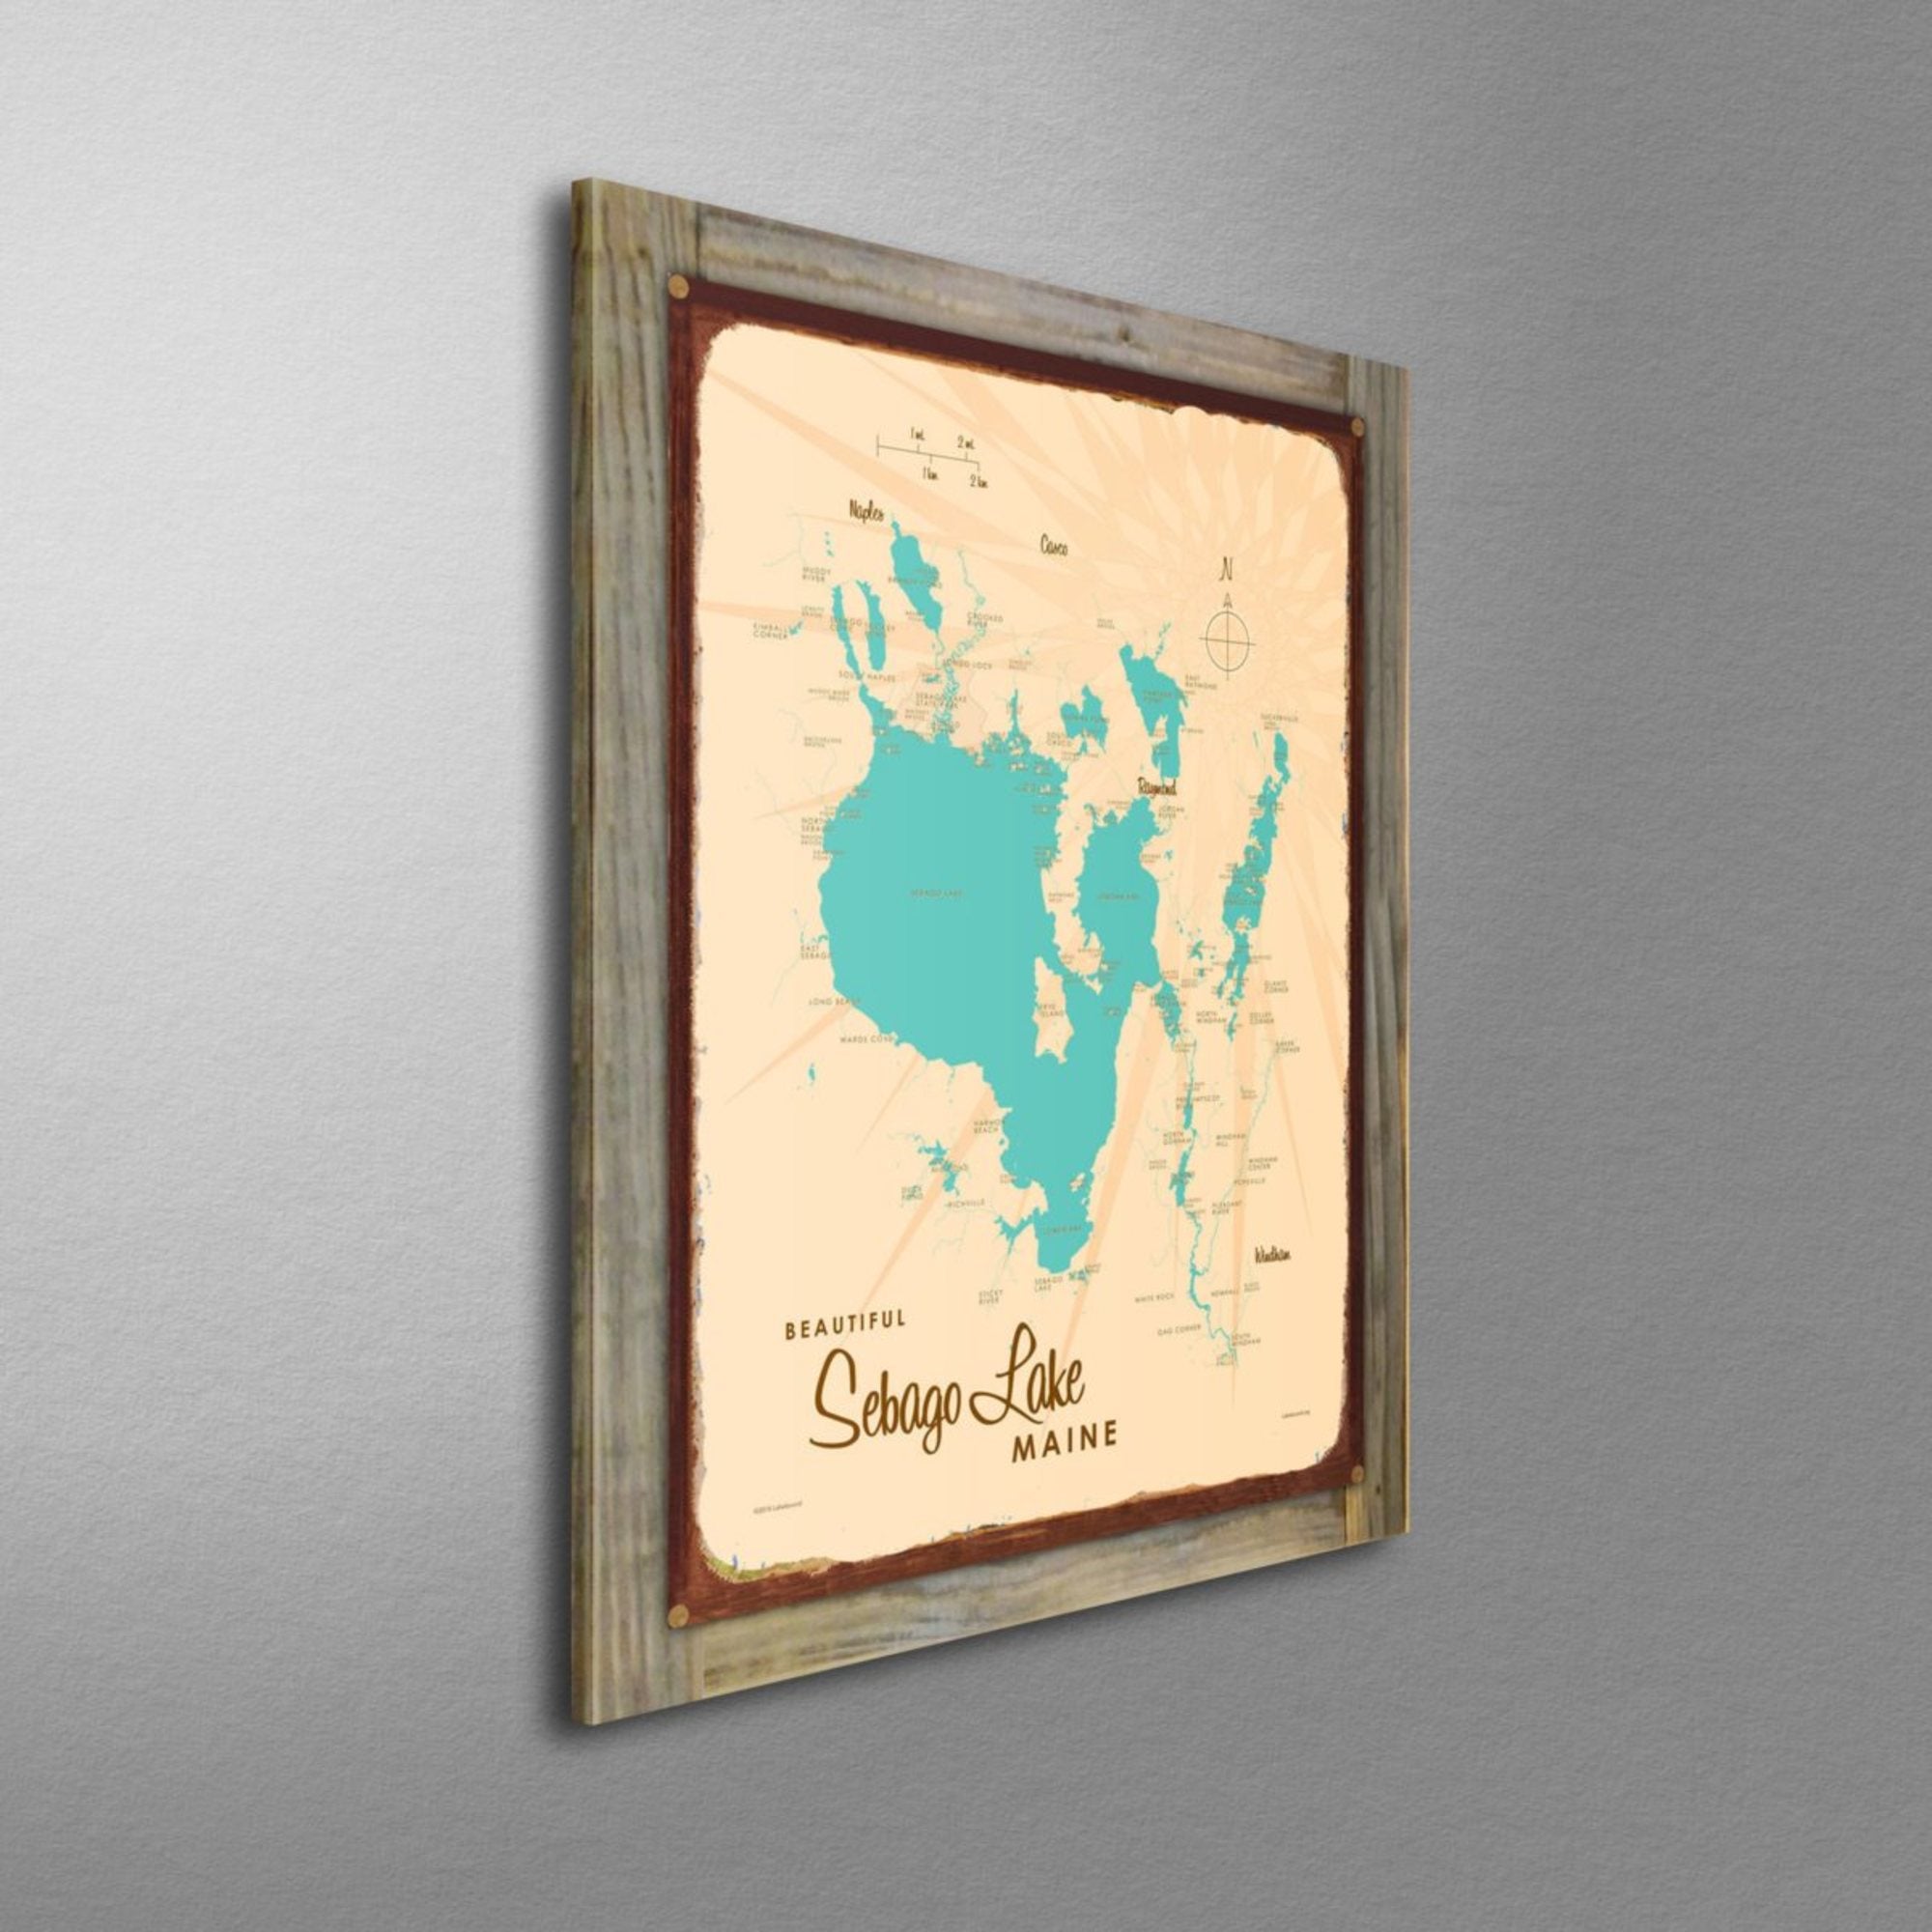 Sebago Lake Maine, Wood-Mounted Rustic Metal Sign Map Art